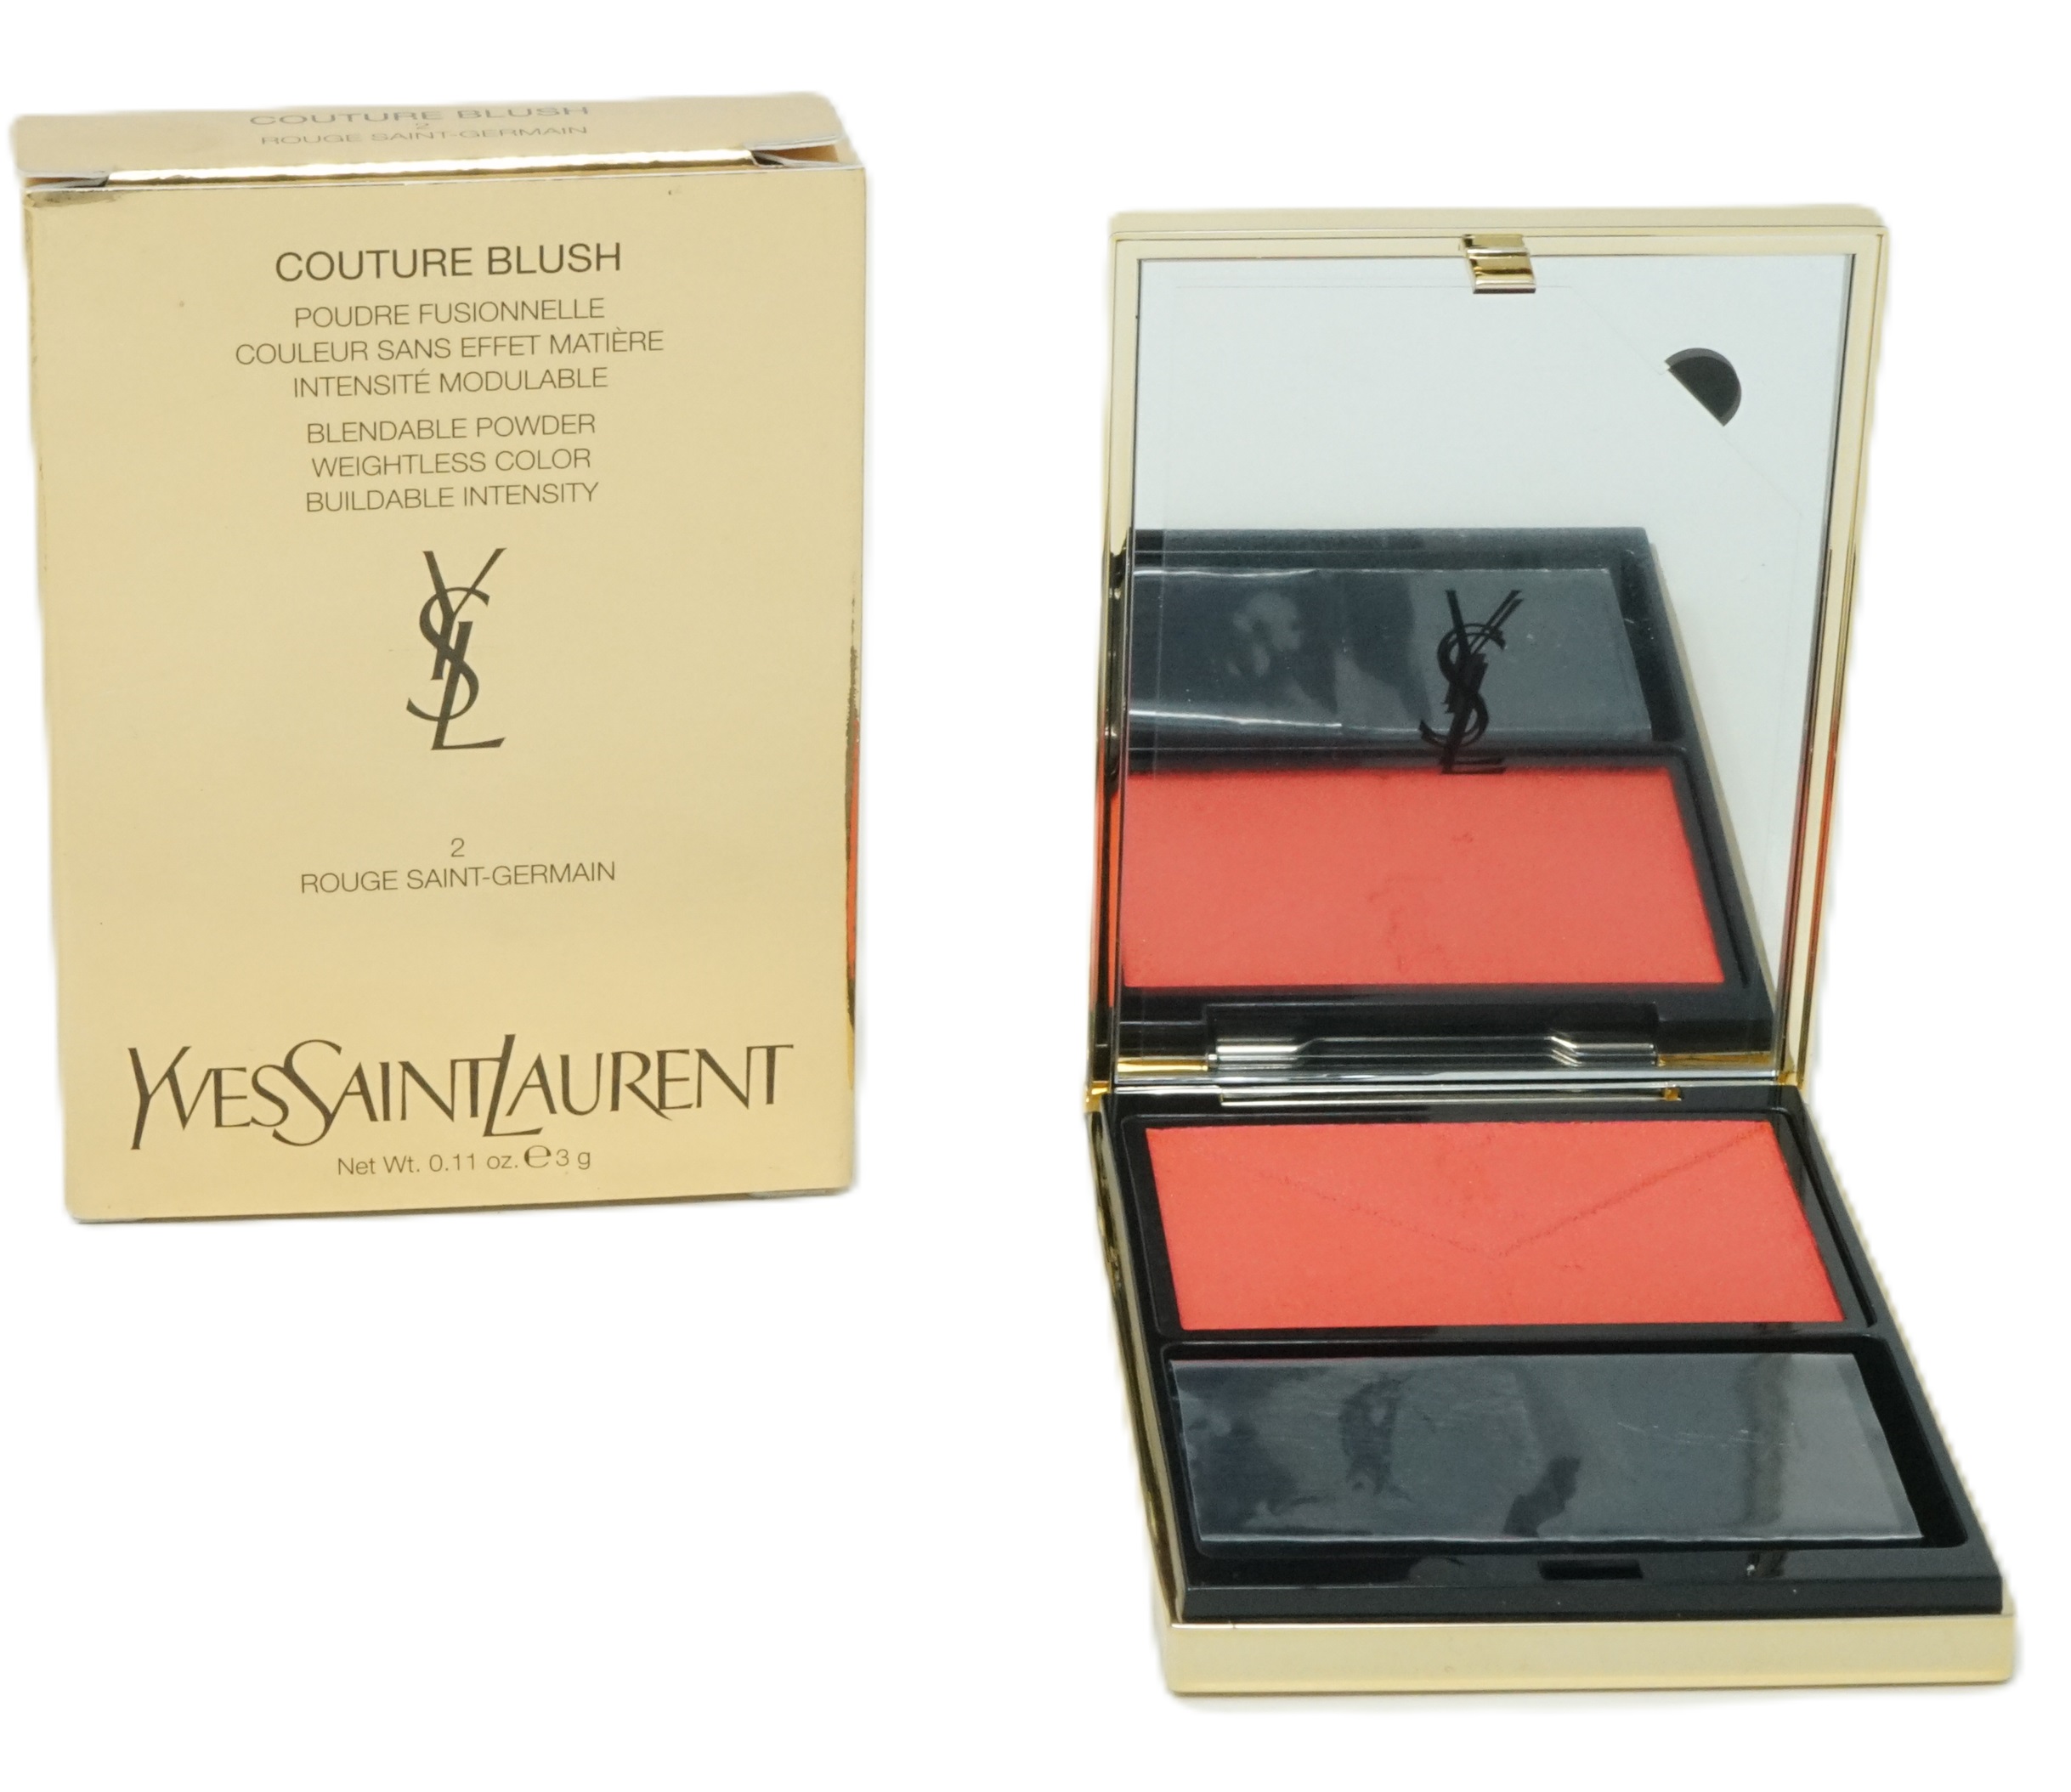 Yves Saint Laurent Couture Blush Powder 3g Rouge Saint-German 2